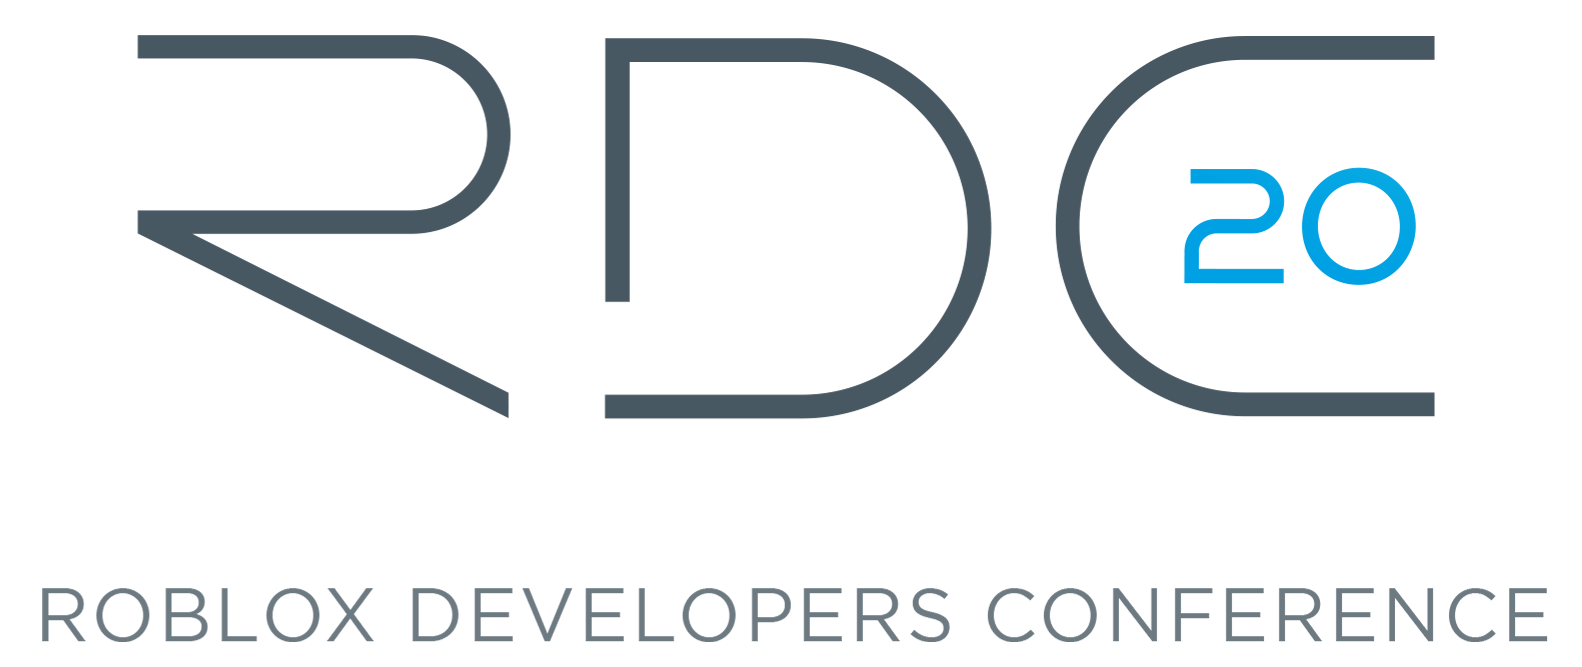 Roblox Developers Conference 2020 Roblox Wikia Fandom - roblox rdc 2019 promo code